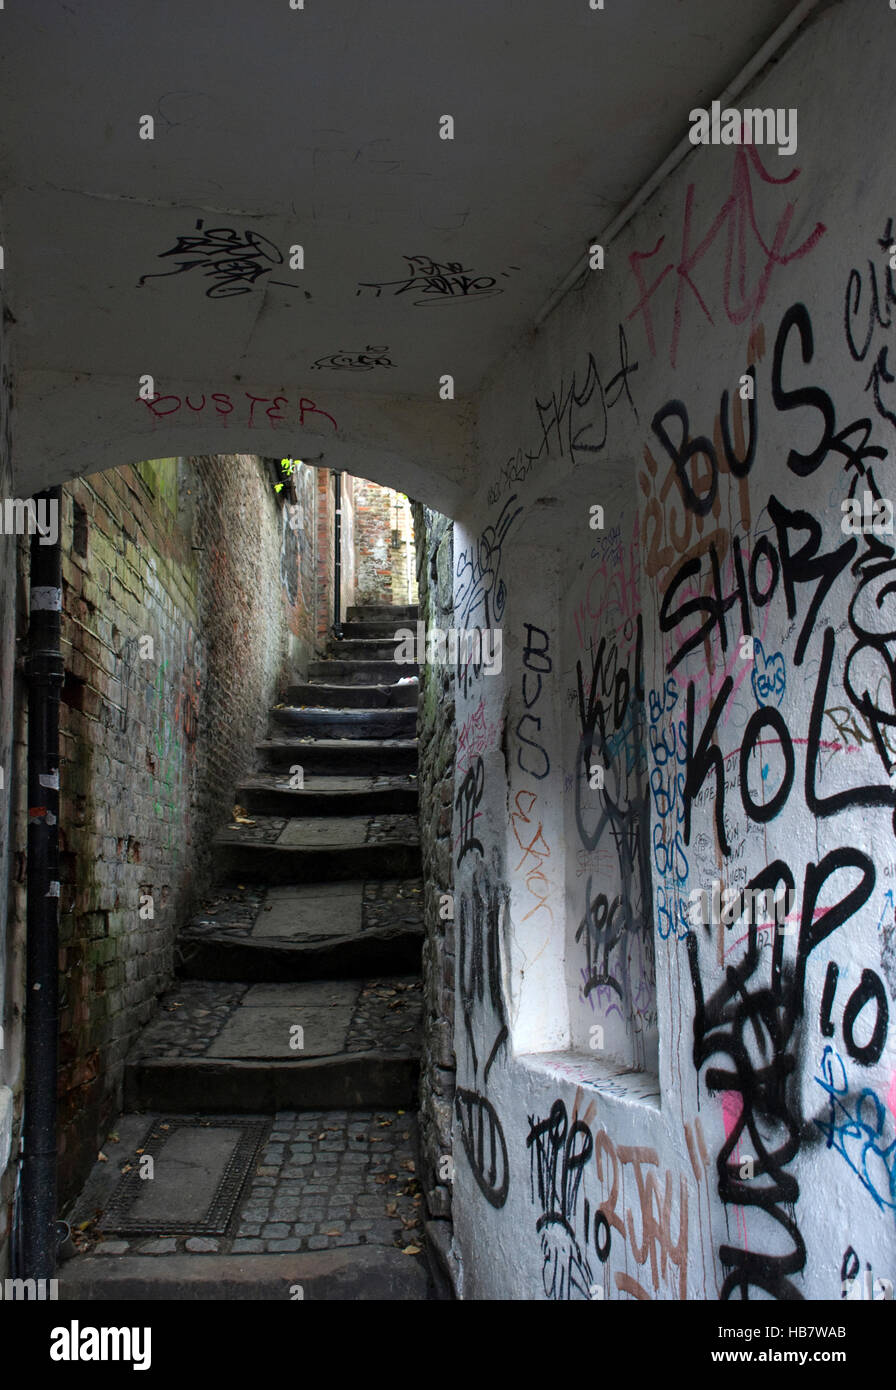 Wand Graffiti in schmalen Furnel oder Gasse mit Stufen und gepflasterten Gehweg nach oben Stockfoto